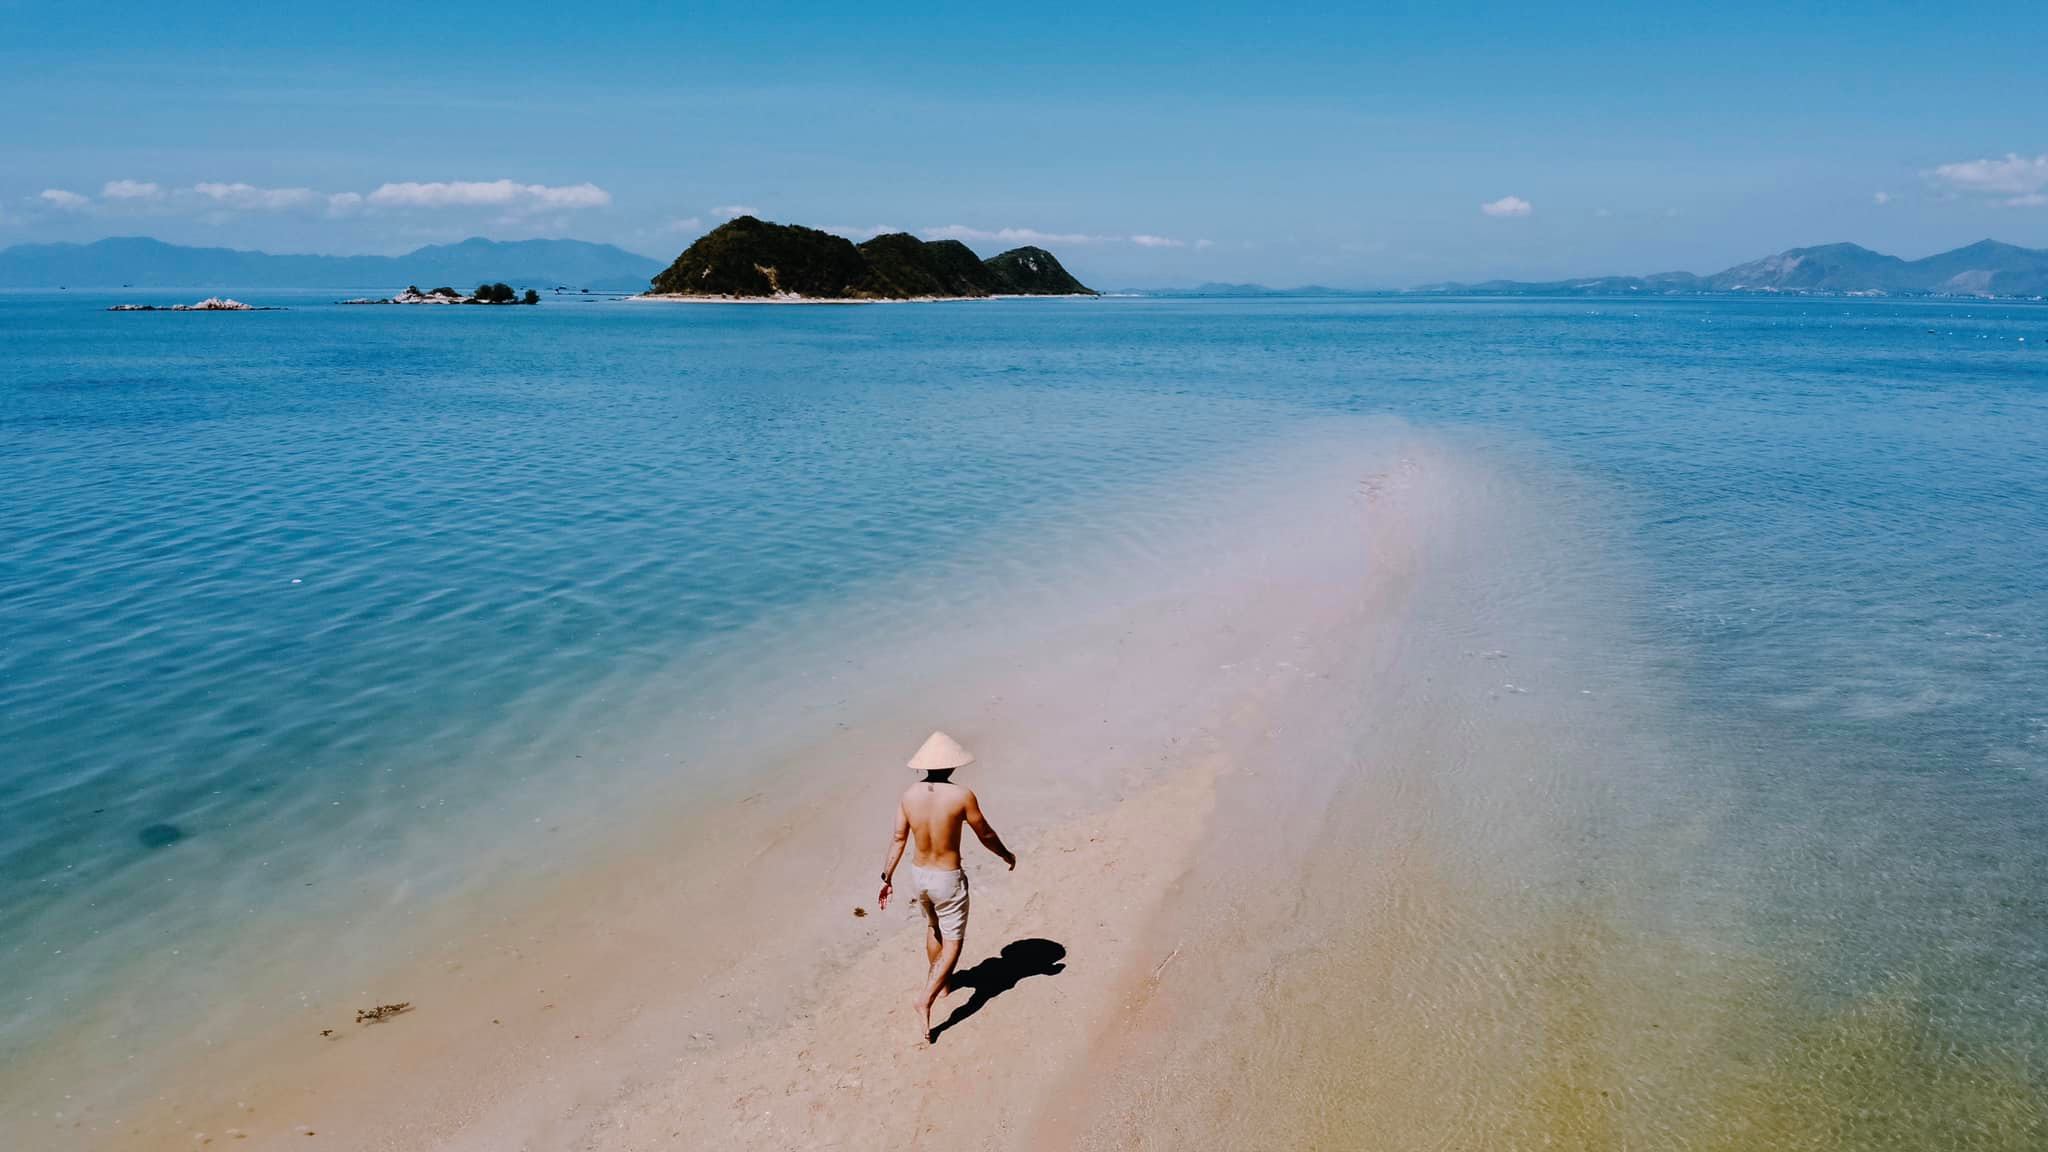 Khám phá vẻ đẹp độc đáo của đảo Điệp Sơn - Nha Trang qua bộ ảnh của Cường Quốc Phạm 9